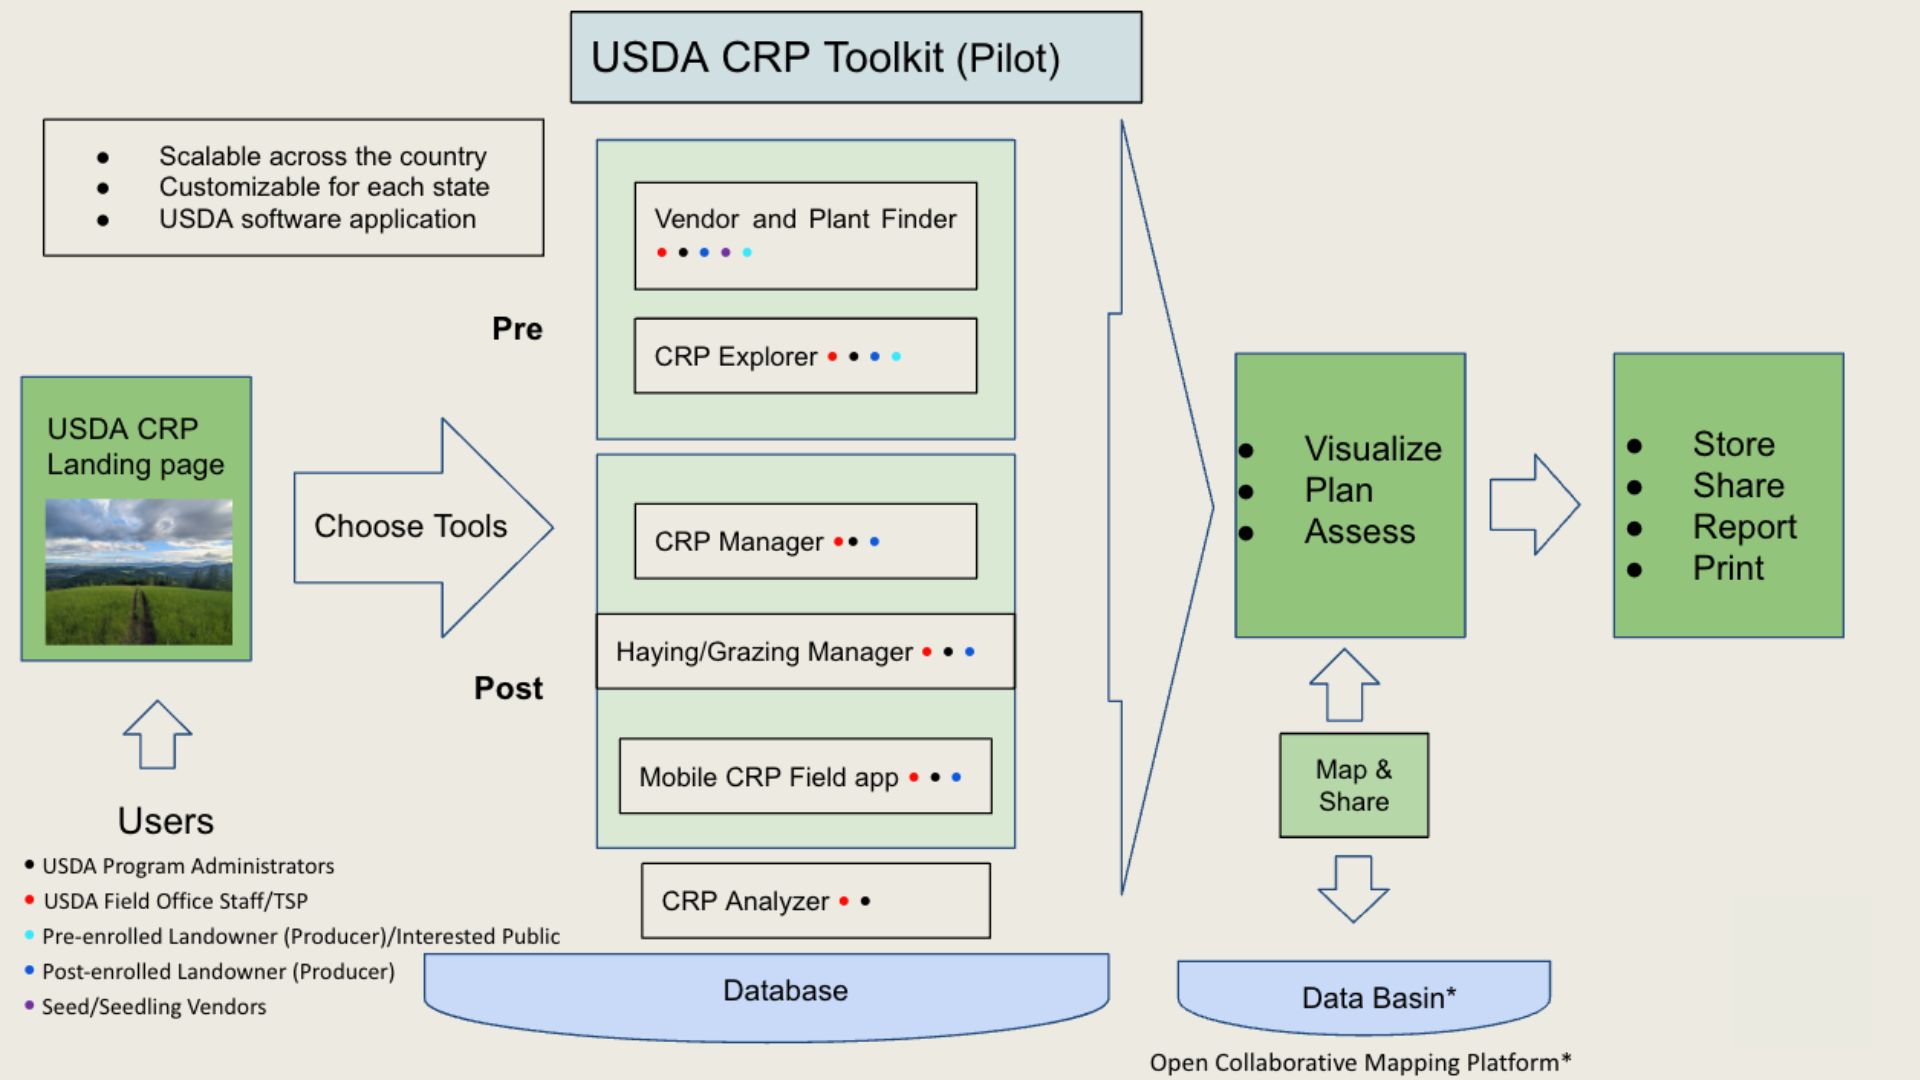 USDA CRP Toolkit (Pilot) chart explaining the process